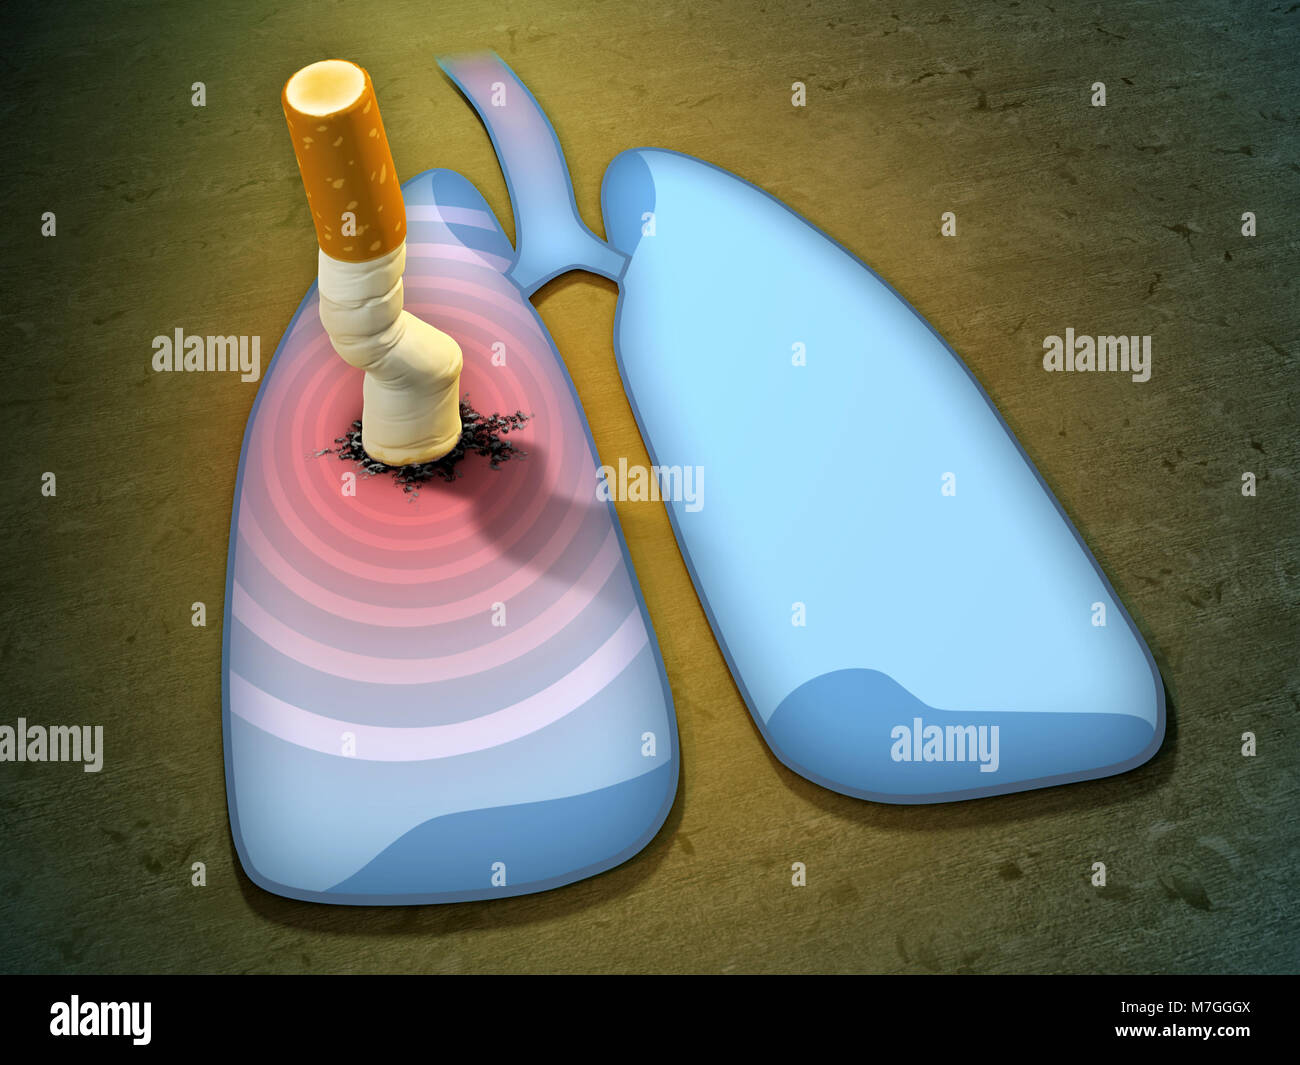 Schiacciato mozzicone di sigaretta causando infiammazione del polmone. 3D'illustrazione. Foto Stock